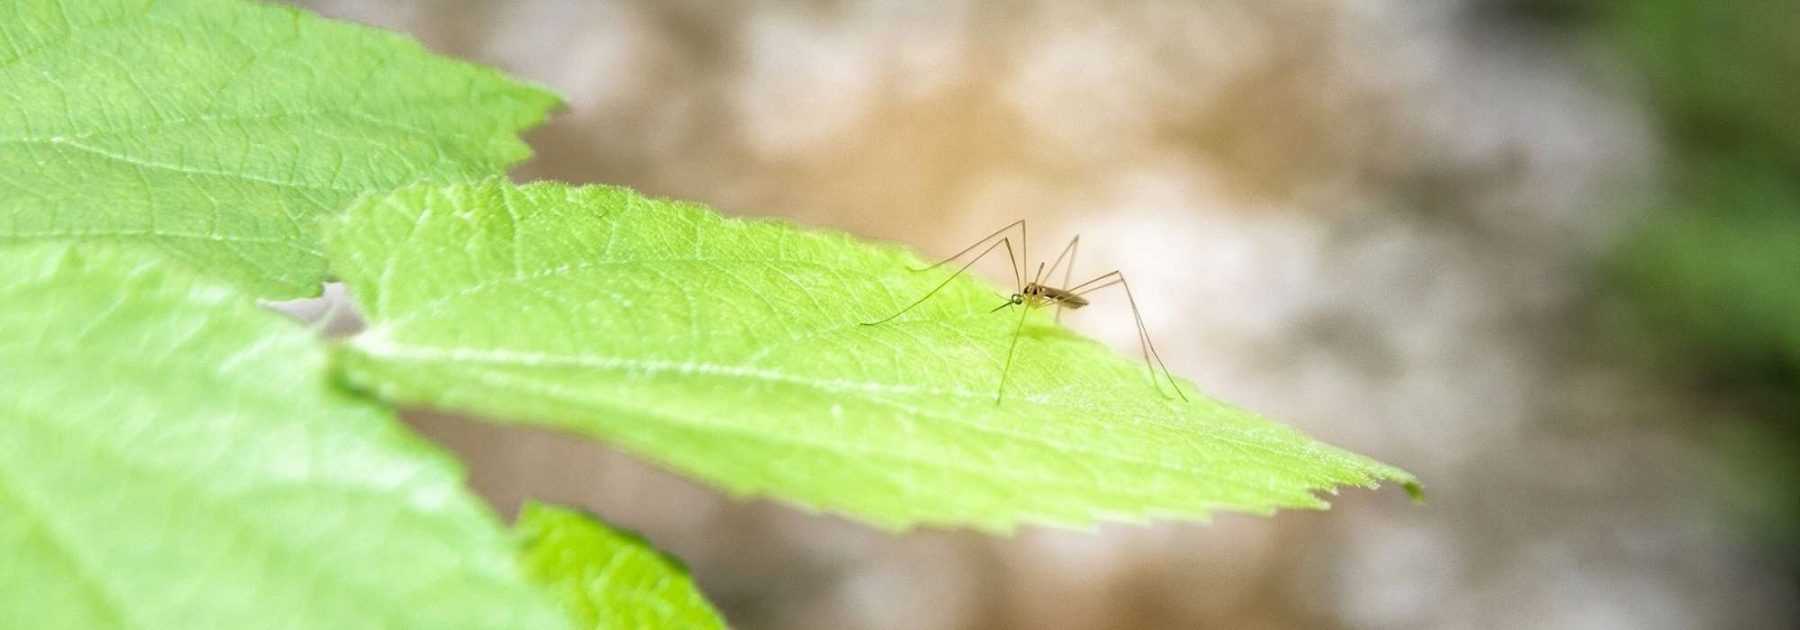 Répulsifs moustiques pour pays tropicaux